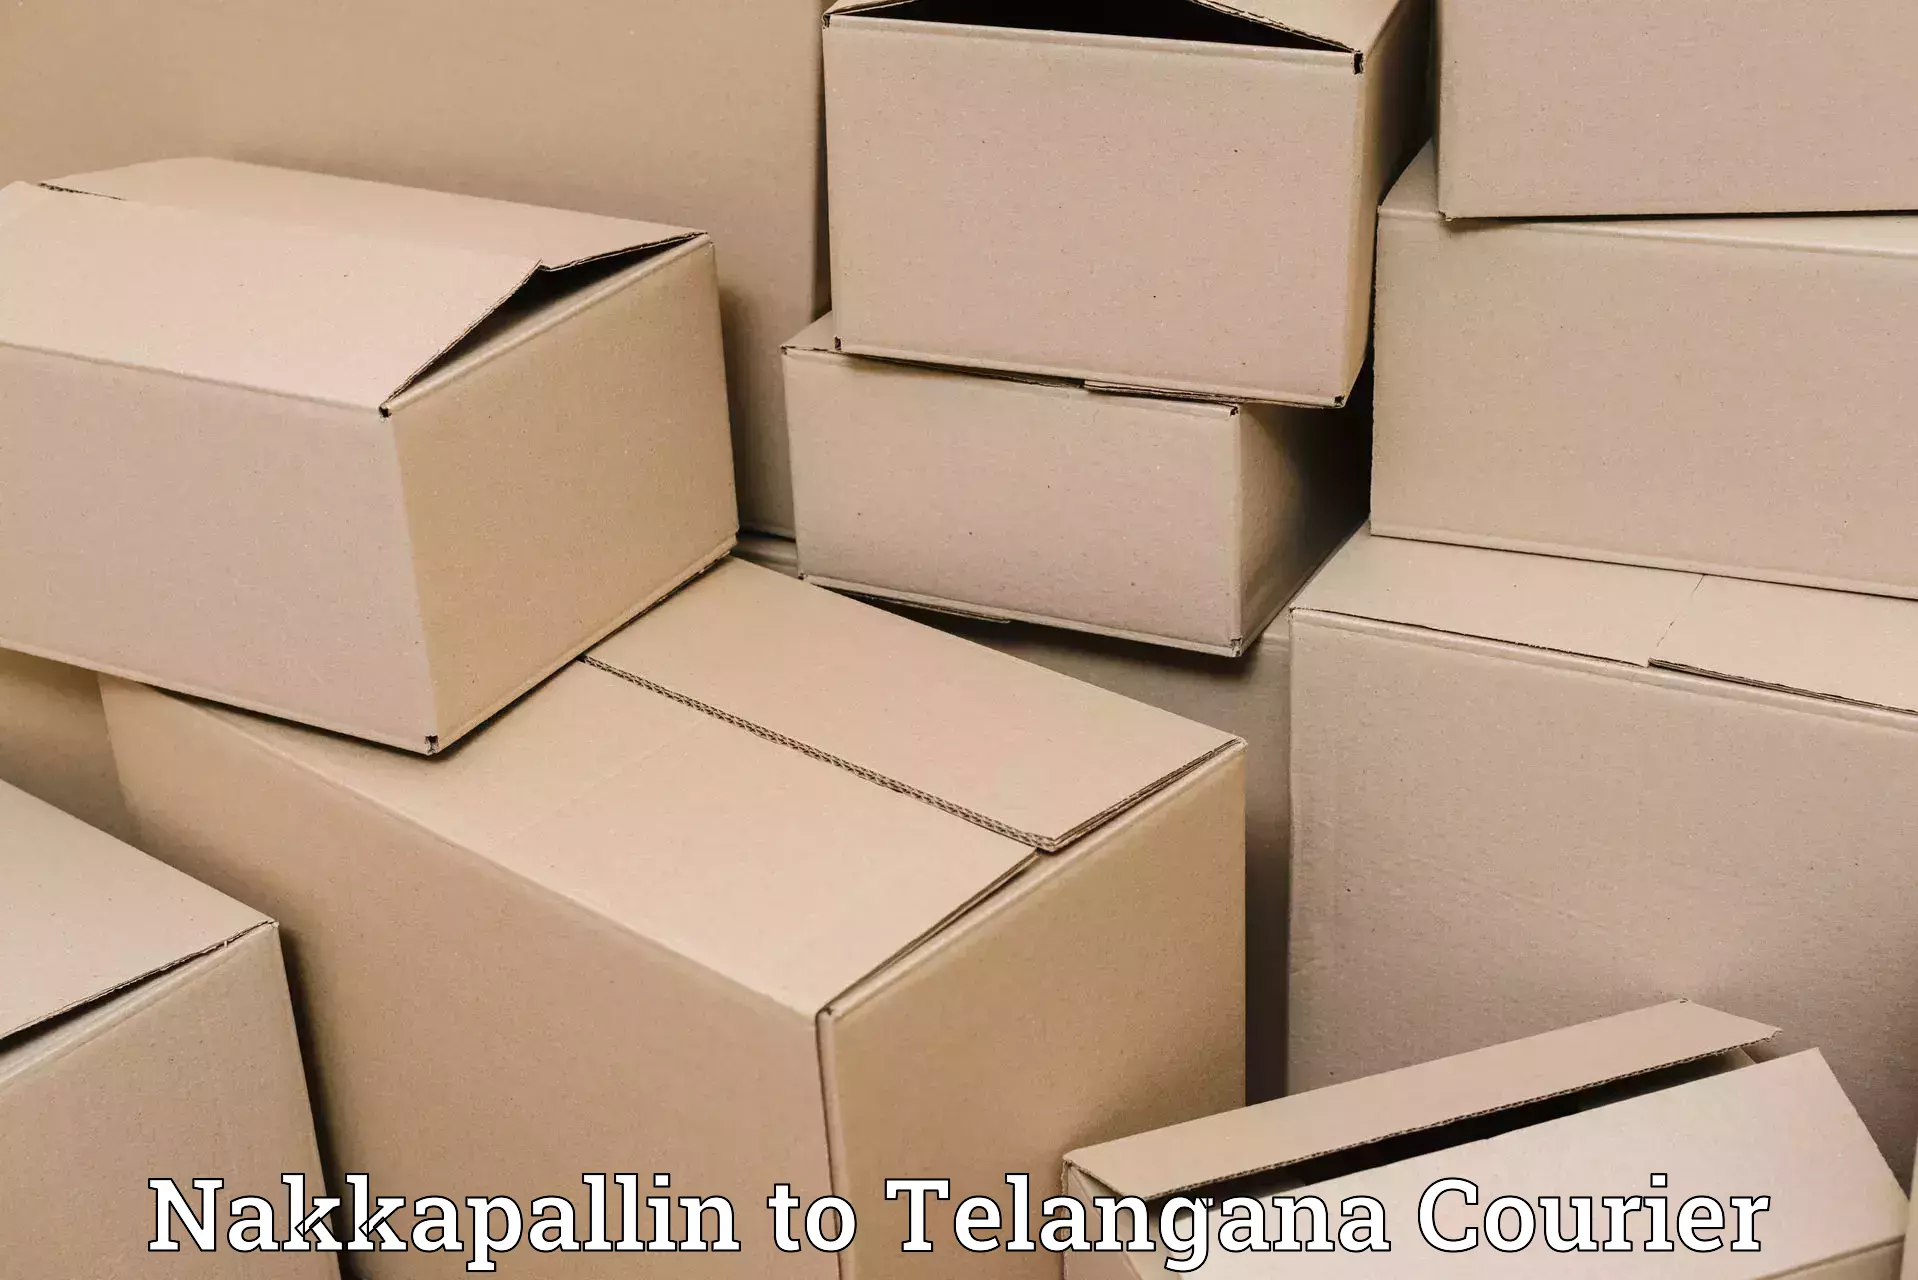 Custom shipping services Nakkapallin to Sikanderguda